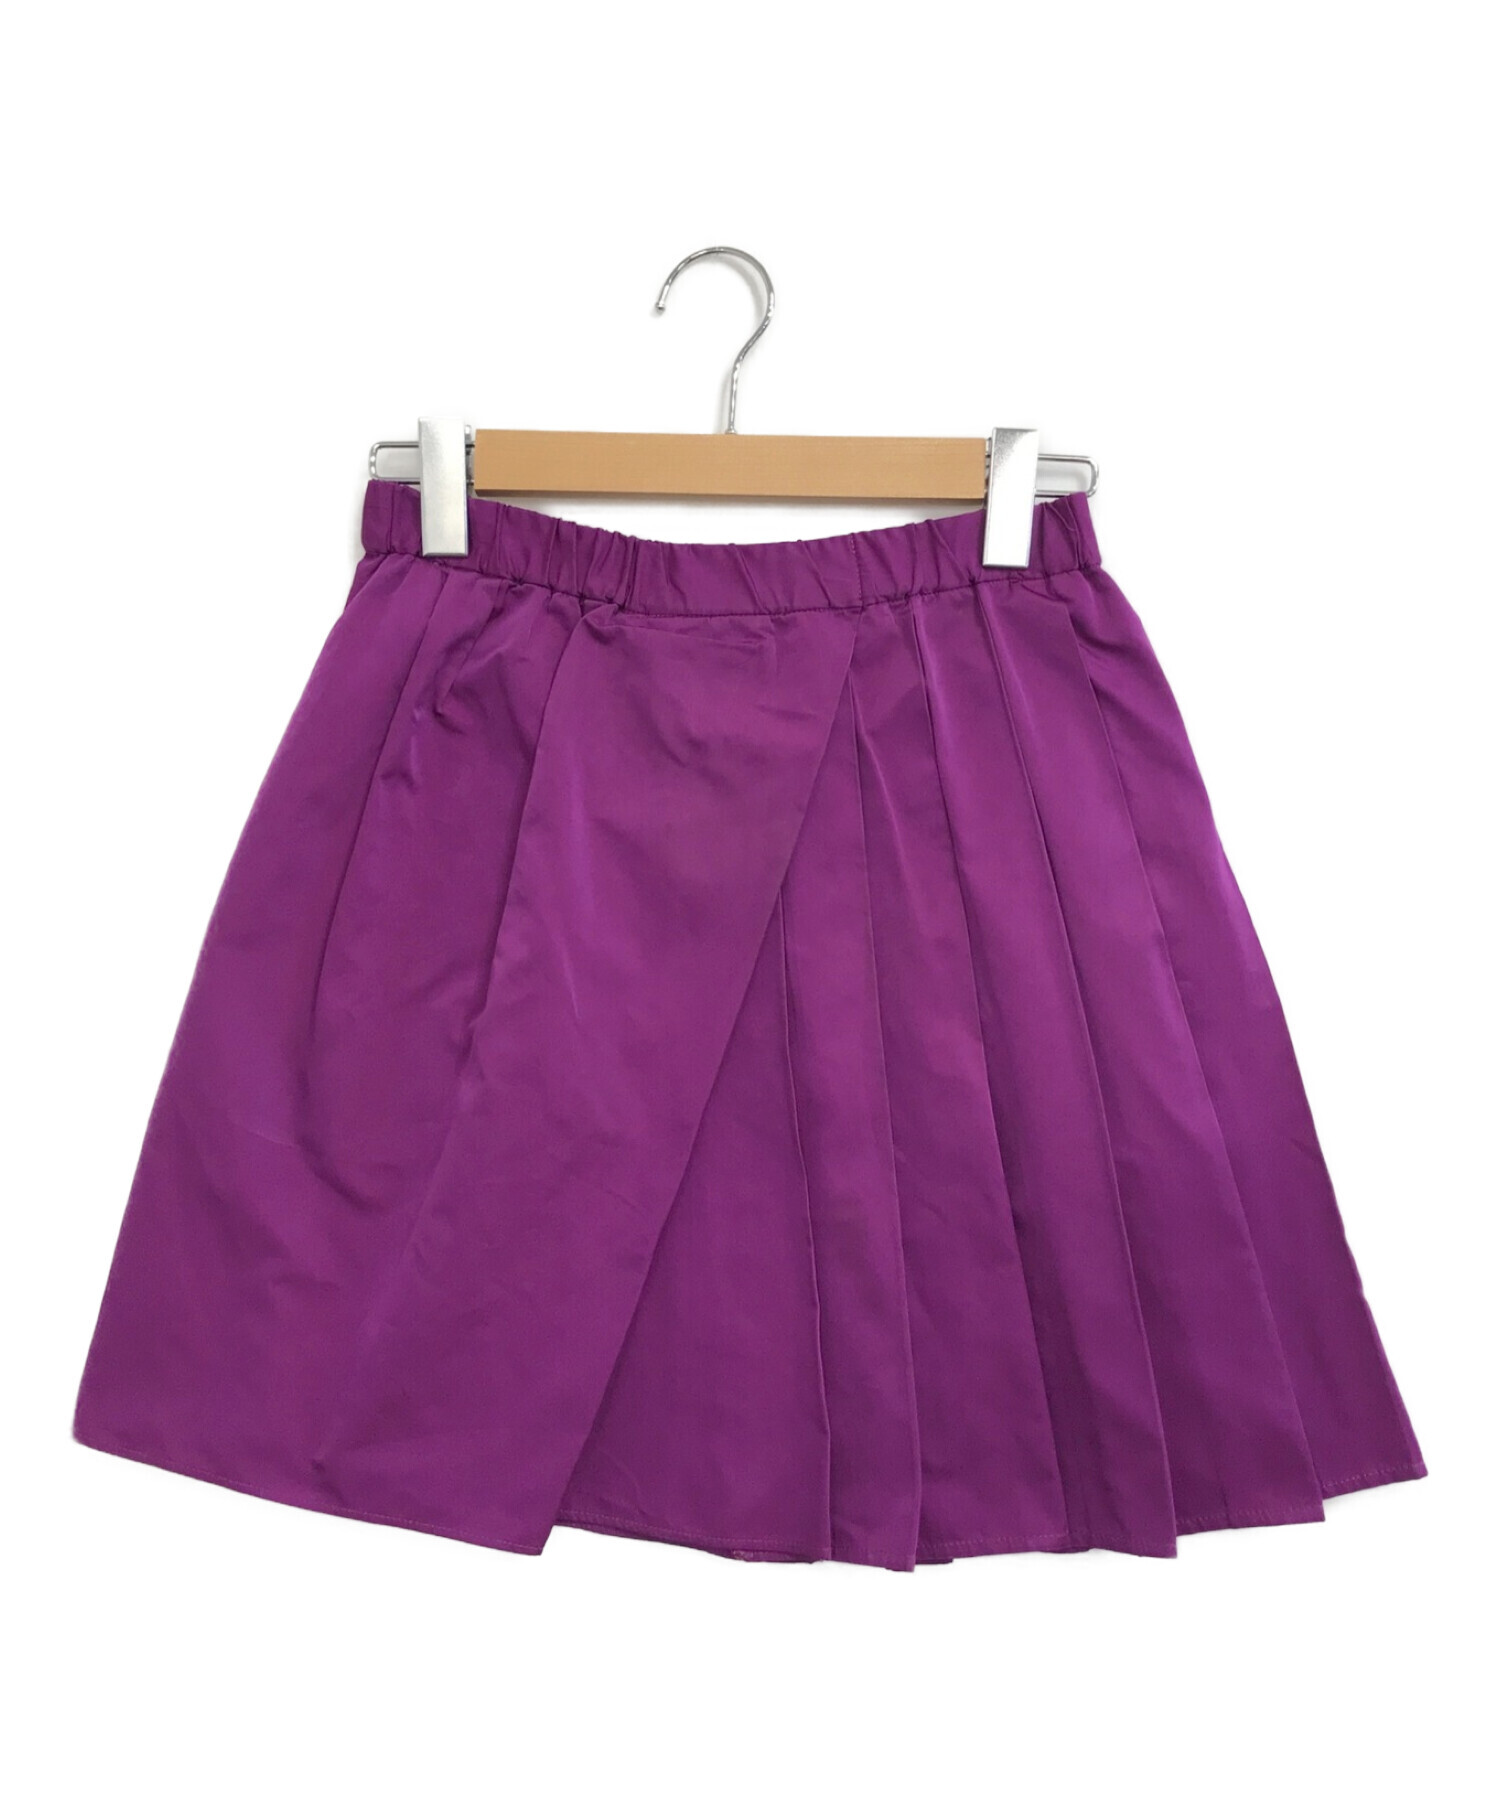 ヌメロヴェントゥーノ n°21ミニスカート - ひざ丈スカート